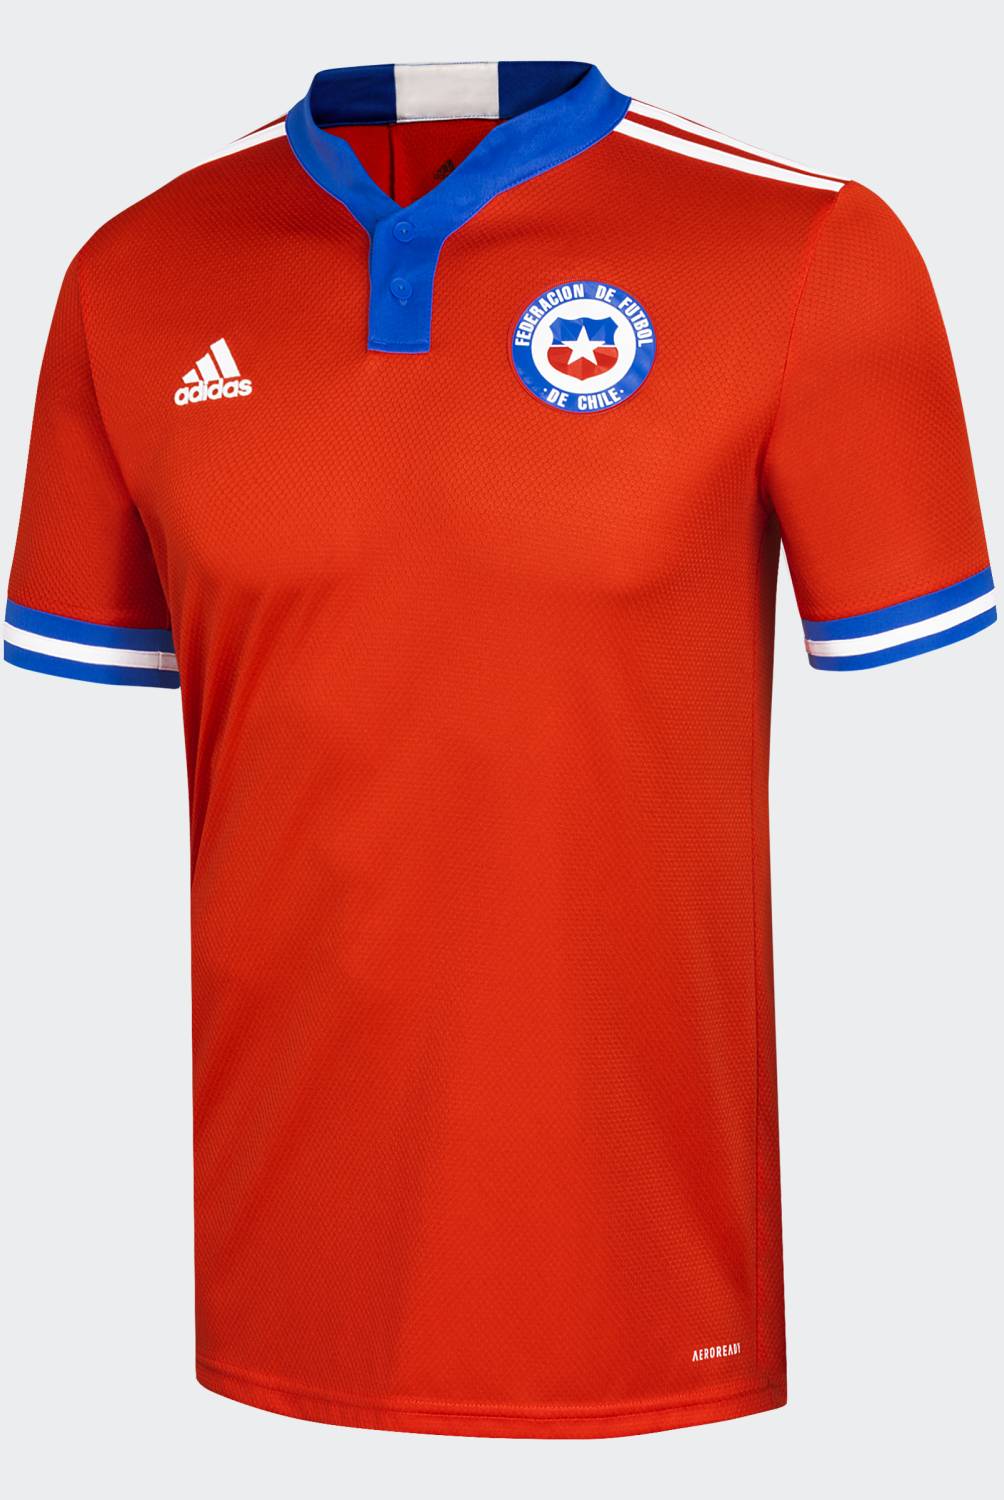 ADIDAS - Adidas Camiseta de Fútbol Selección Chilena Local Hombre